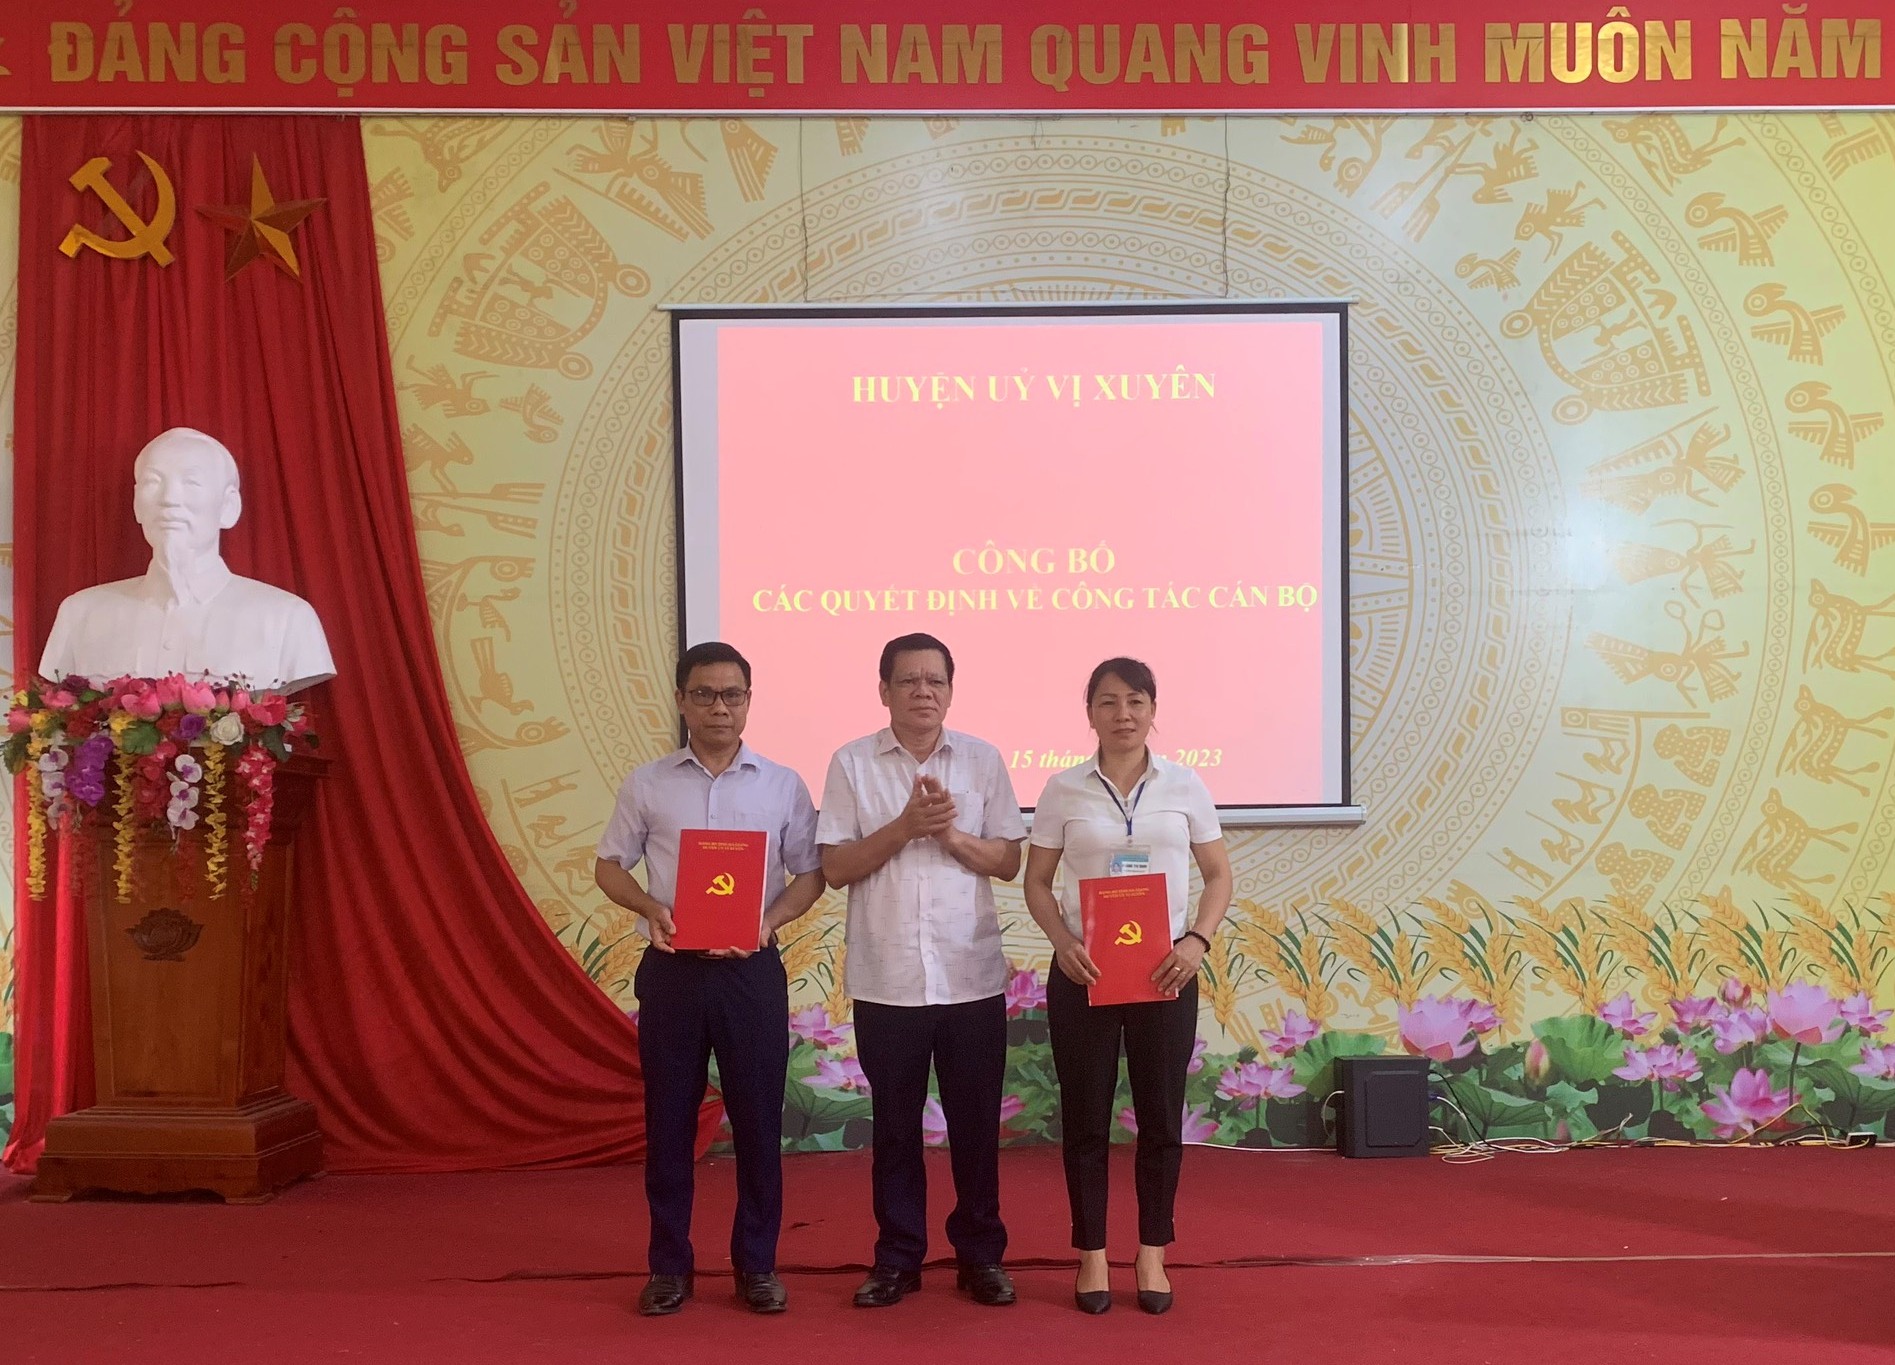 Huyện ủy Vị Xuyên công bố Quyết định về công tác cán bộ tại xã Linh Hồ